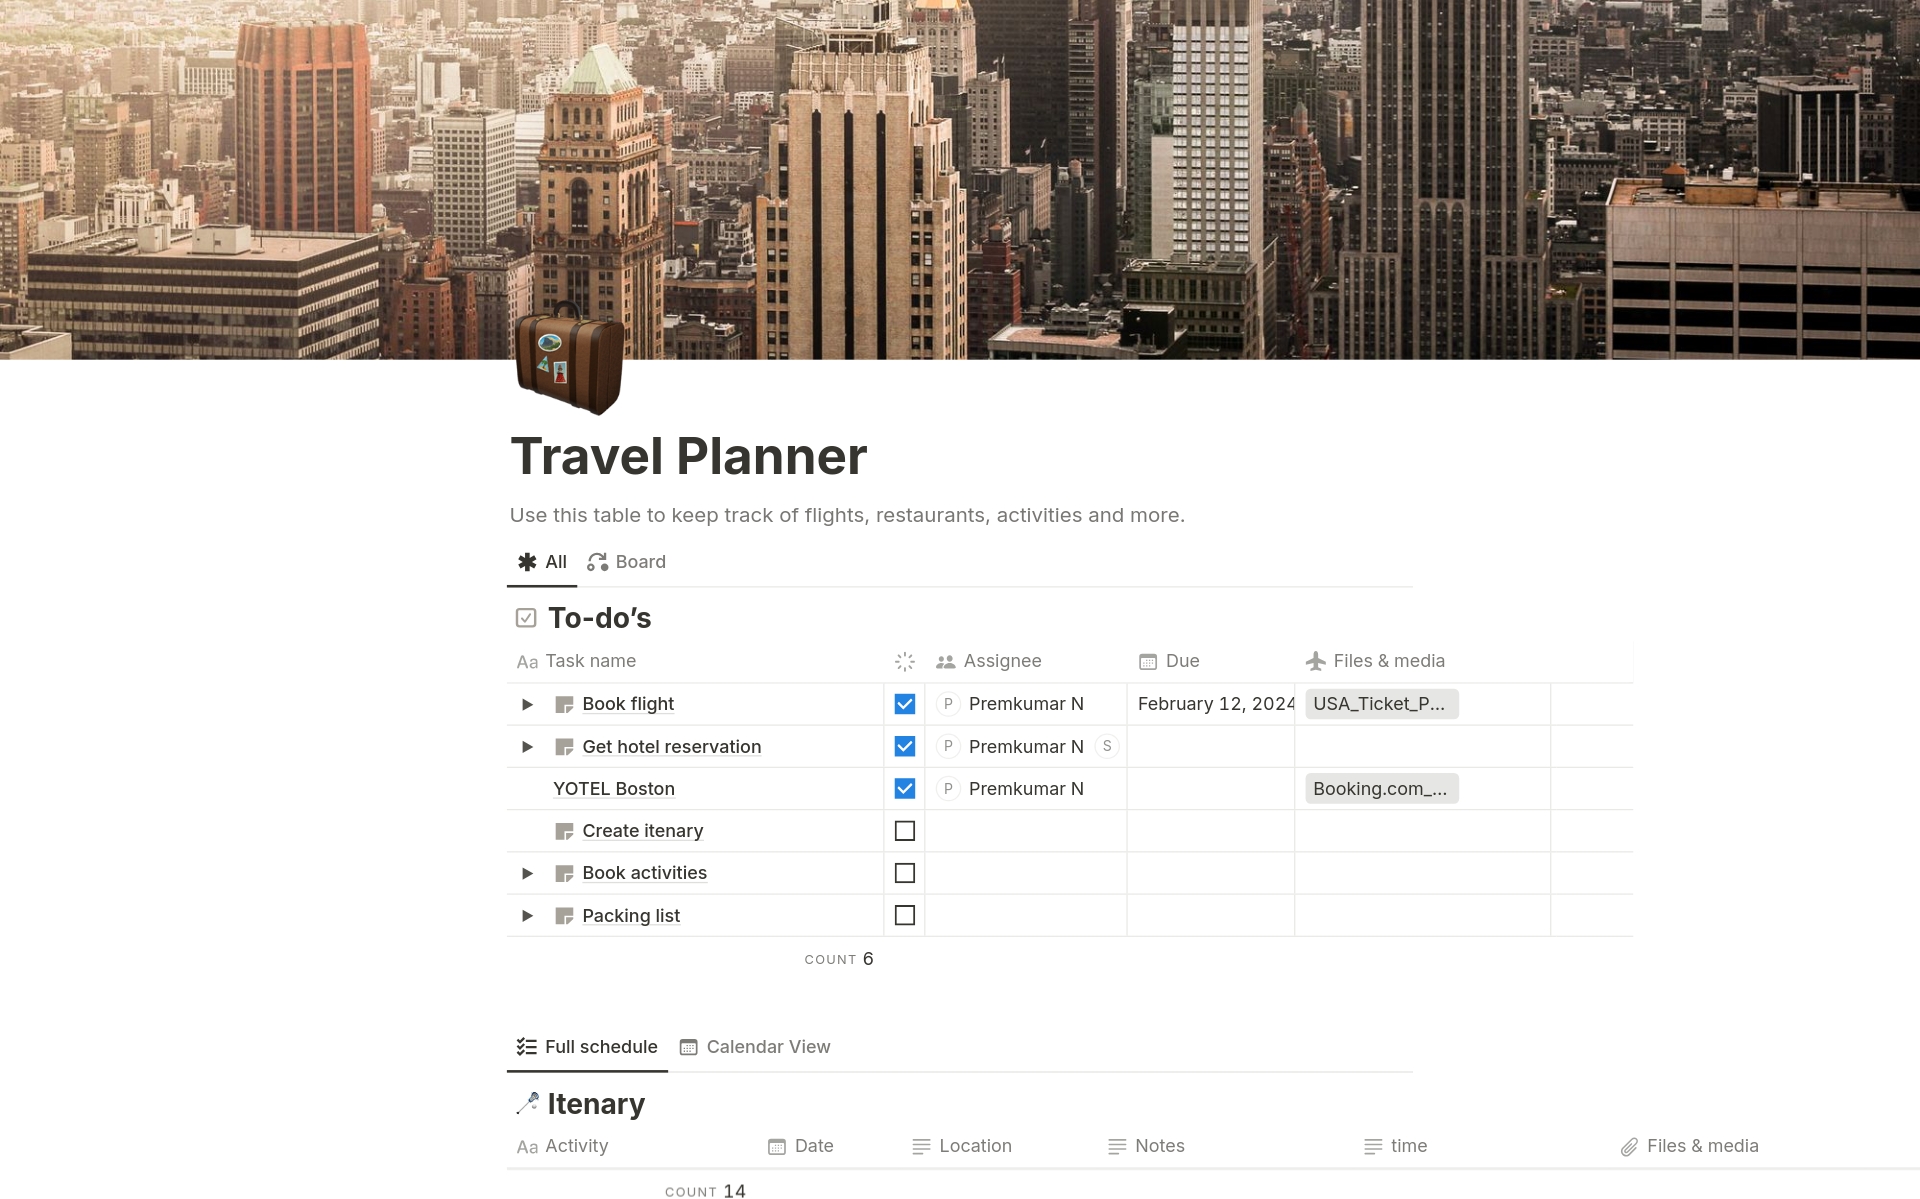 Aperçu du modèle de Travel Planner - USA